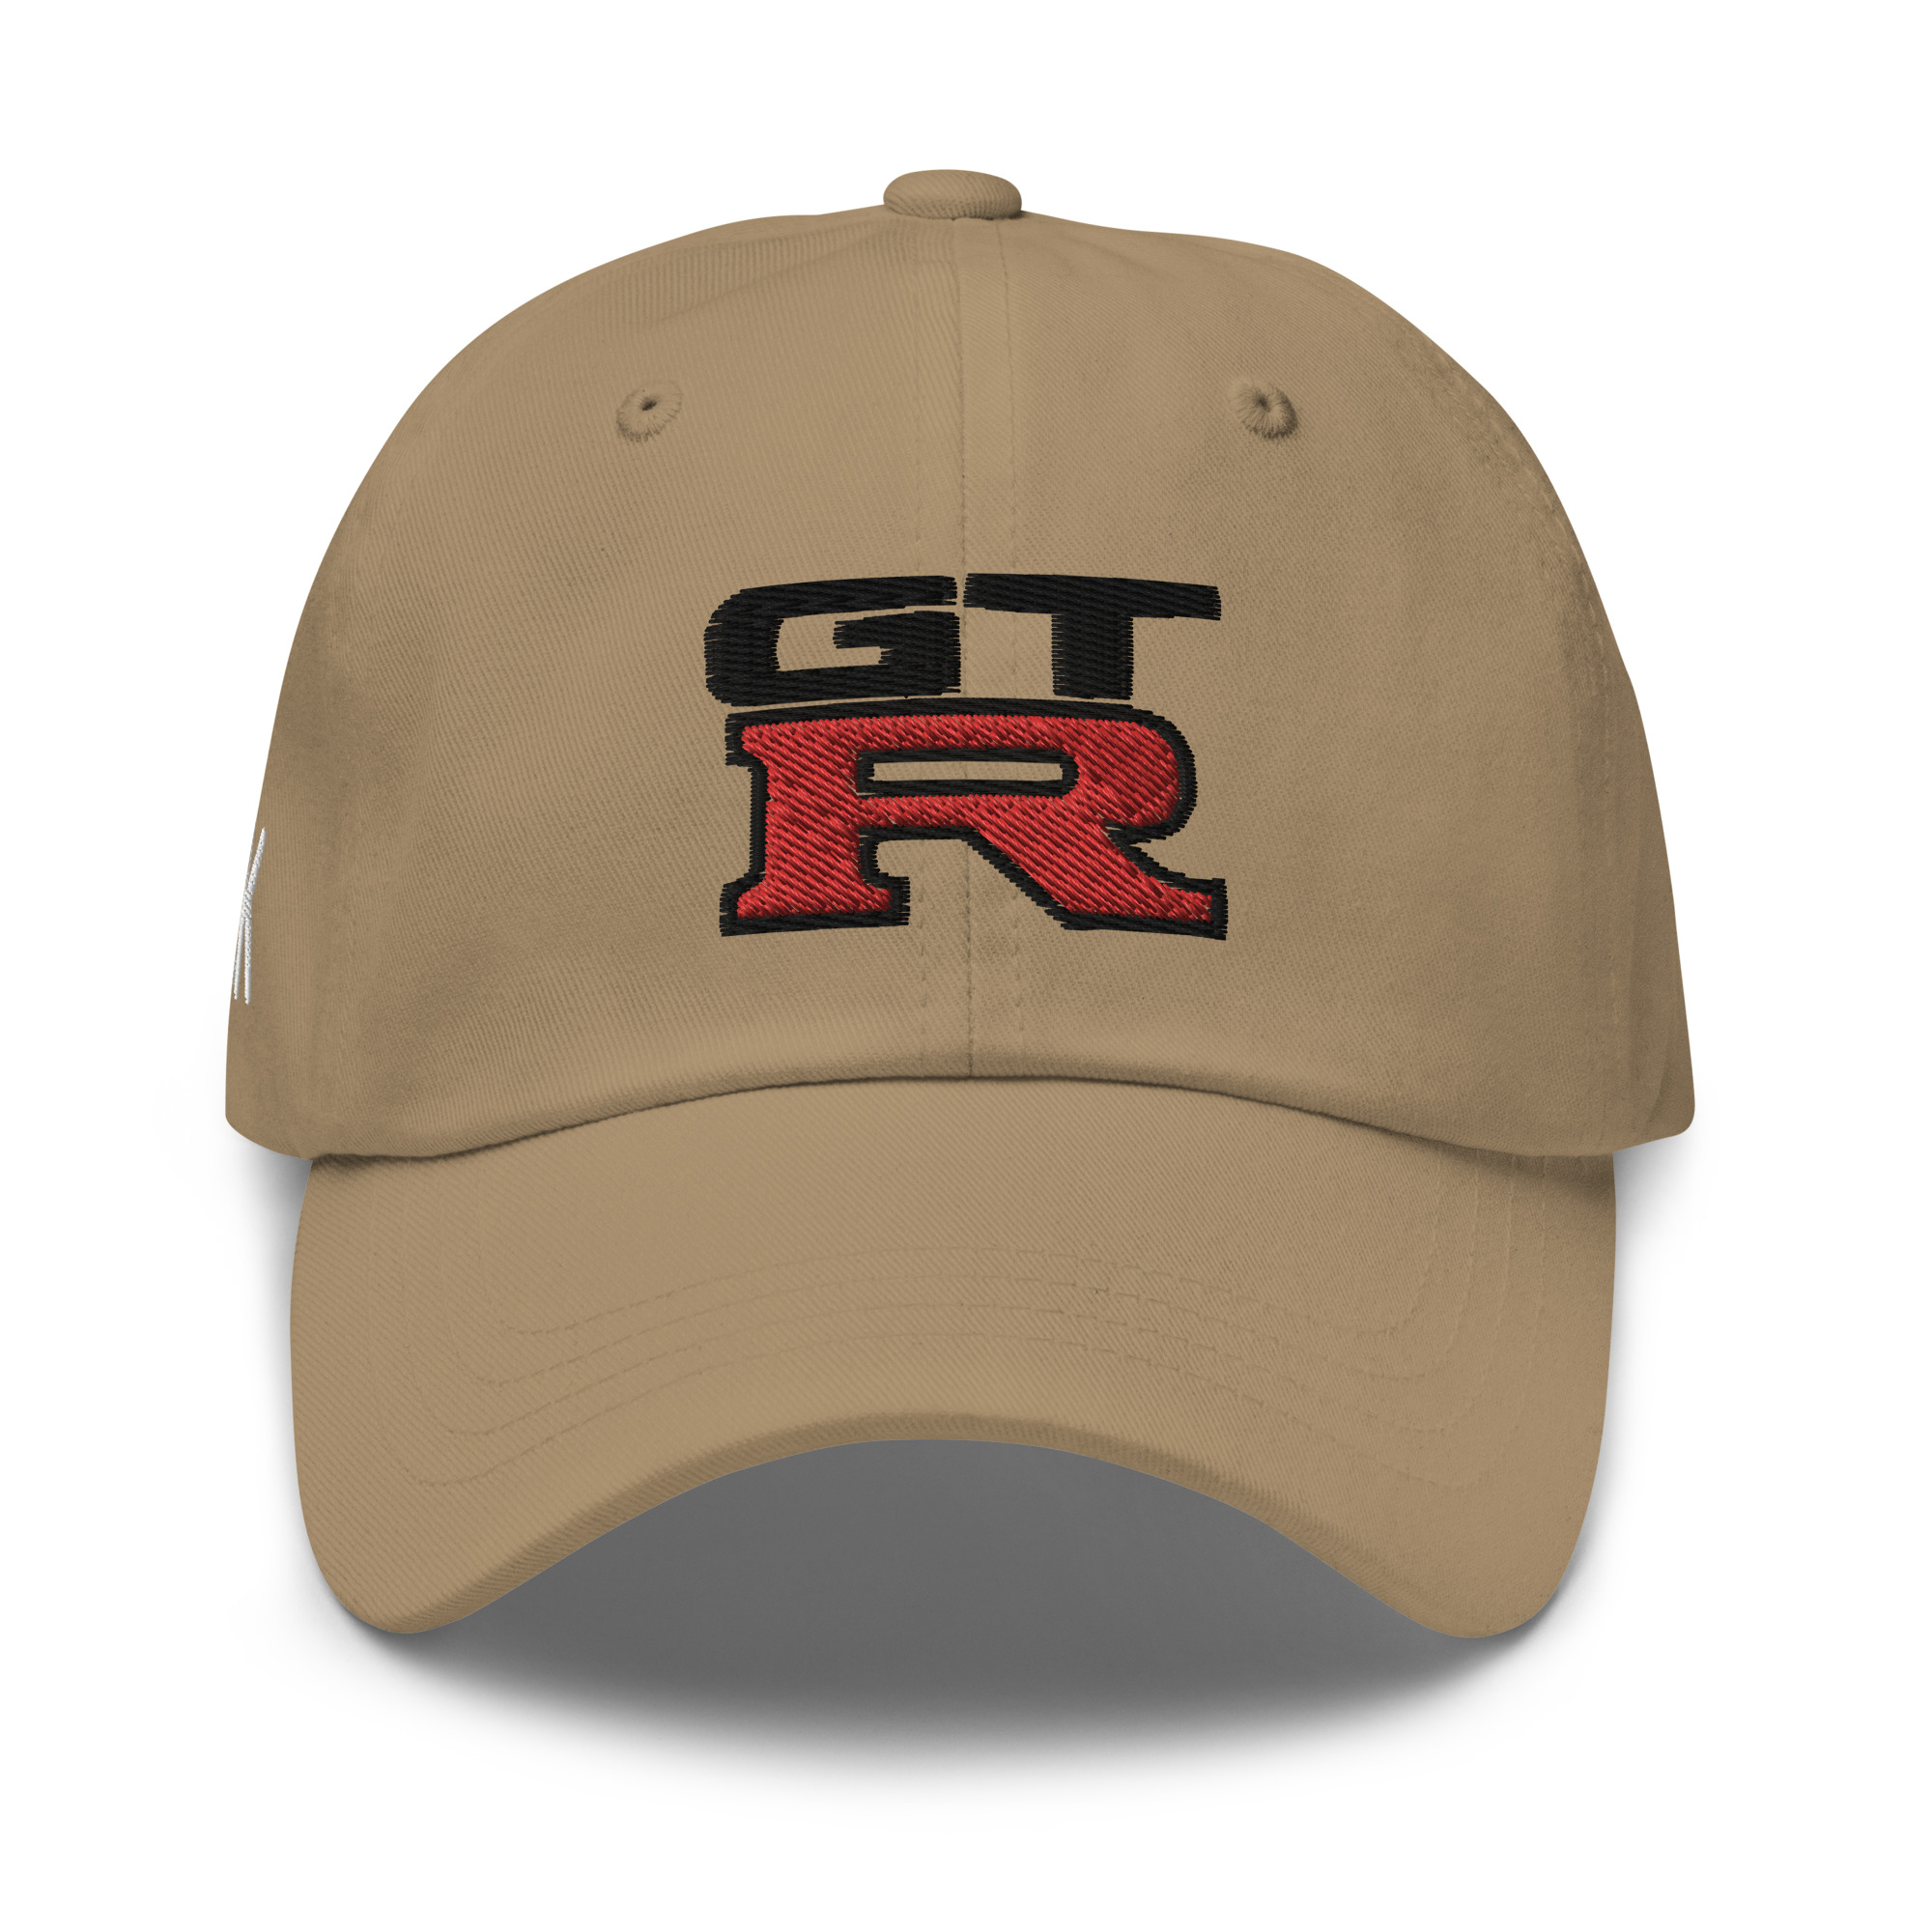 GTR Fan Baseball hat